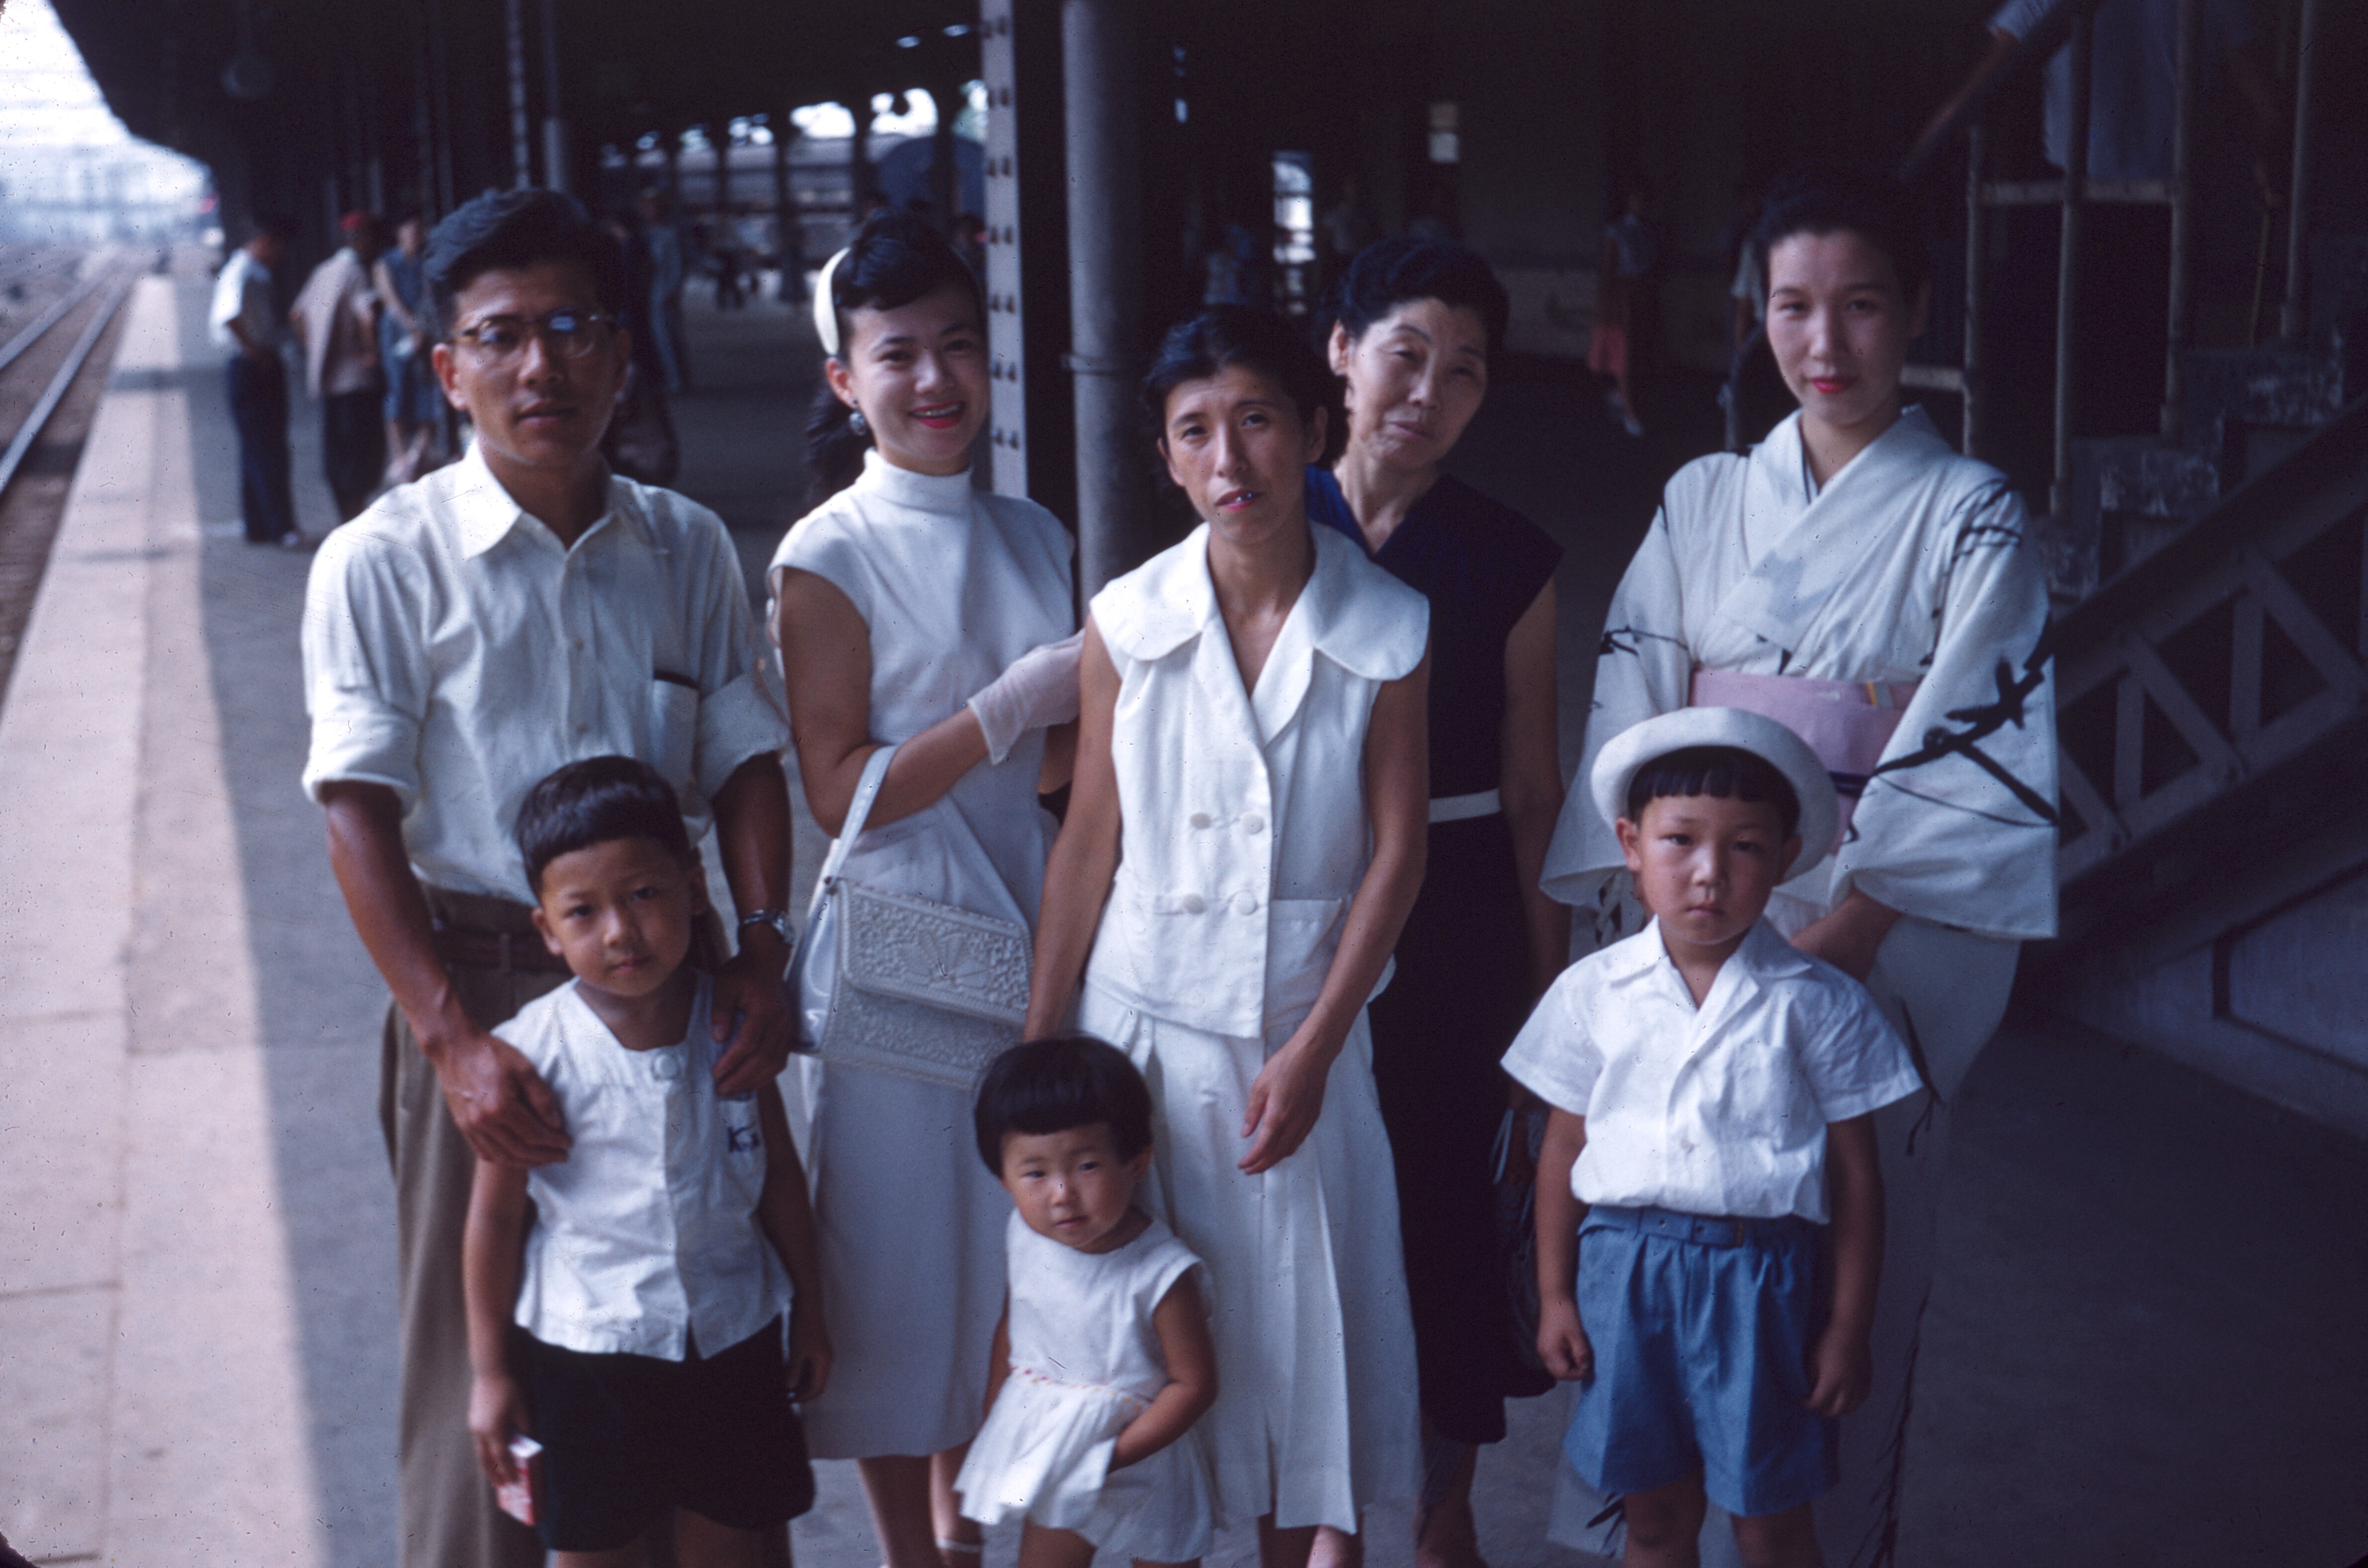 Toshiko and Family, Kyoto RTO, Aug 1956